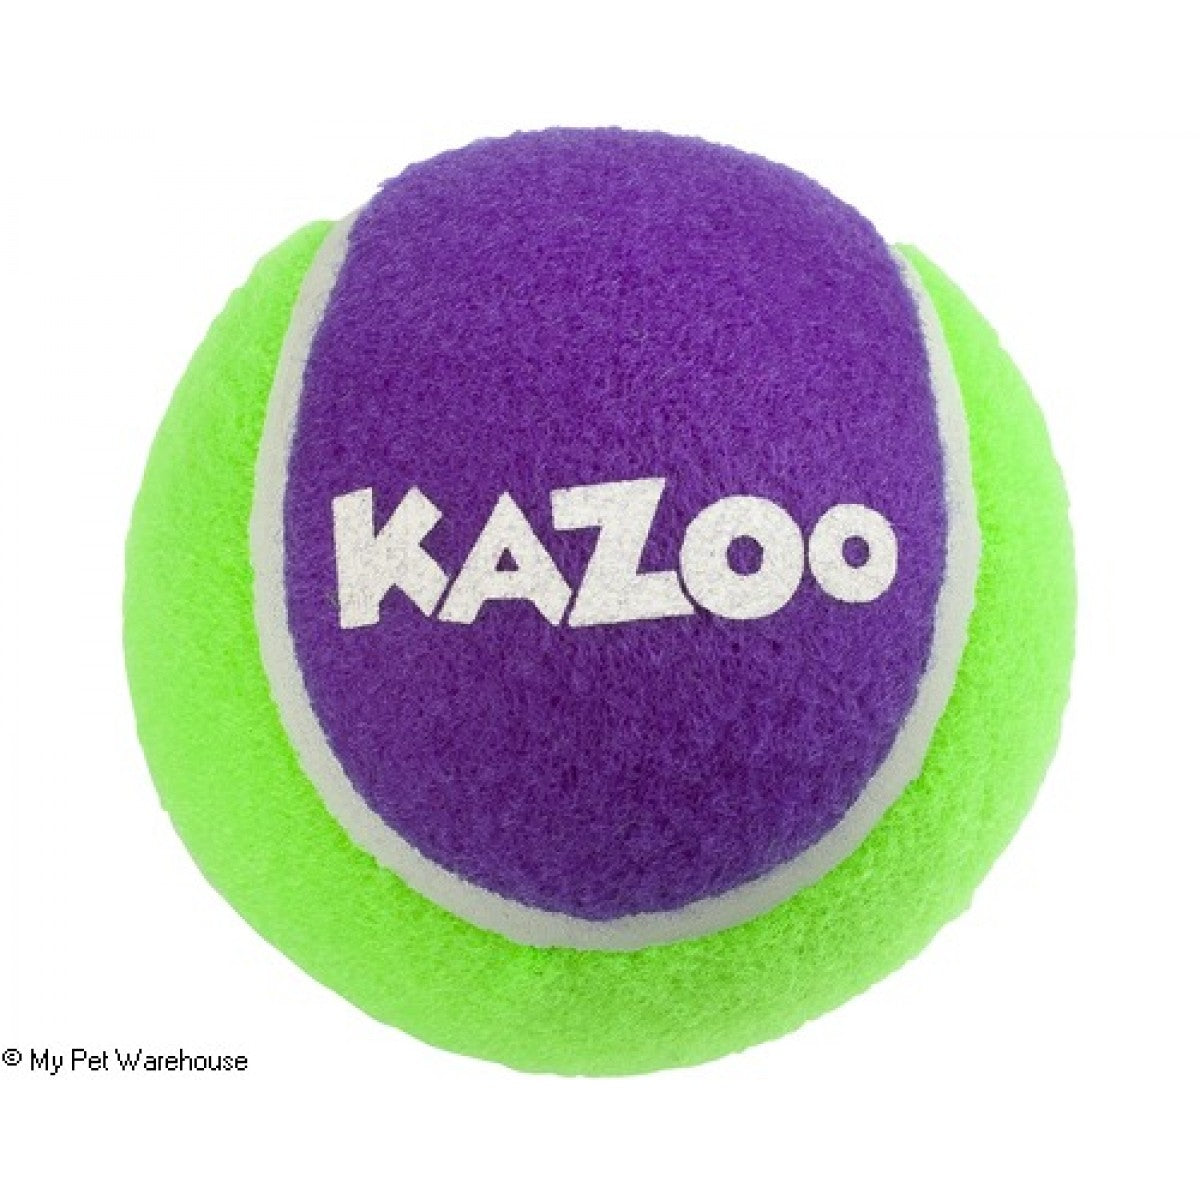 Kazoo- Sponge Tennis Ball Xlarge